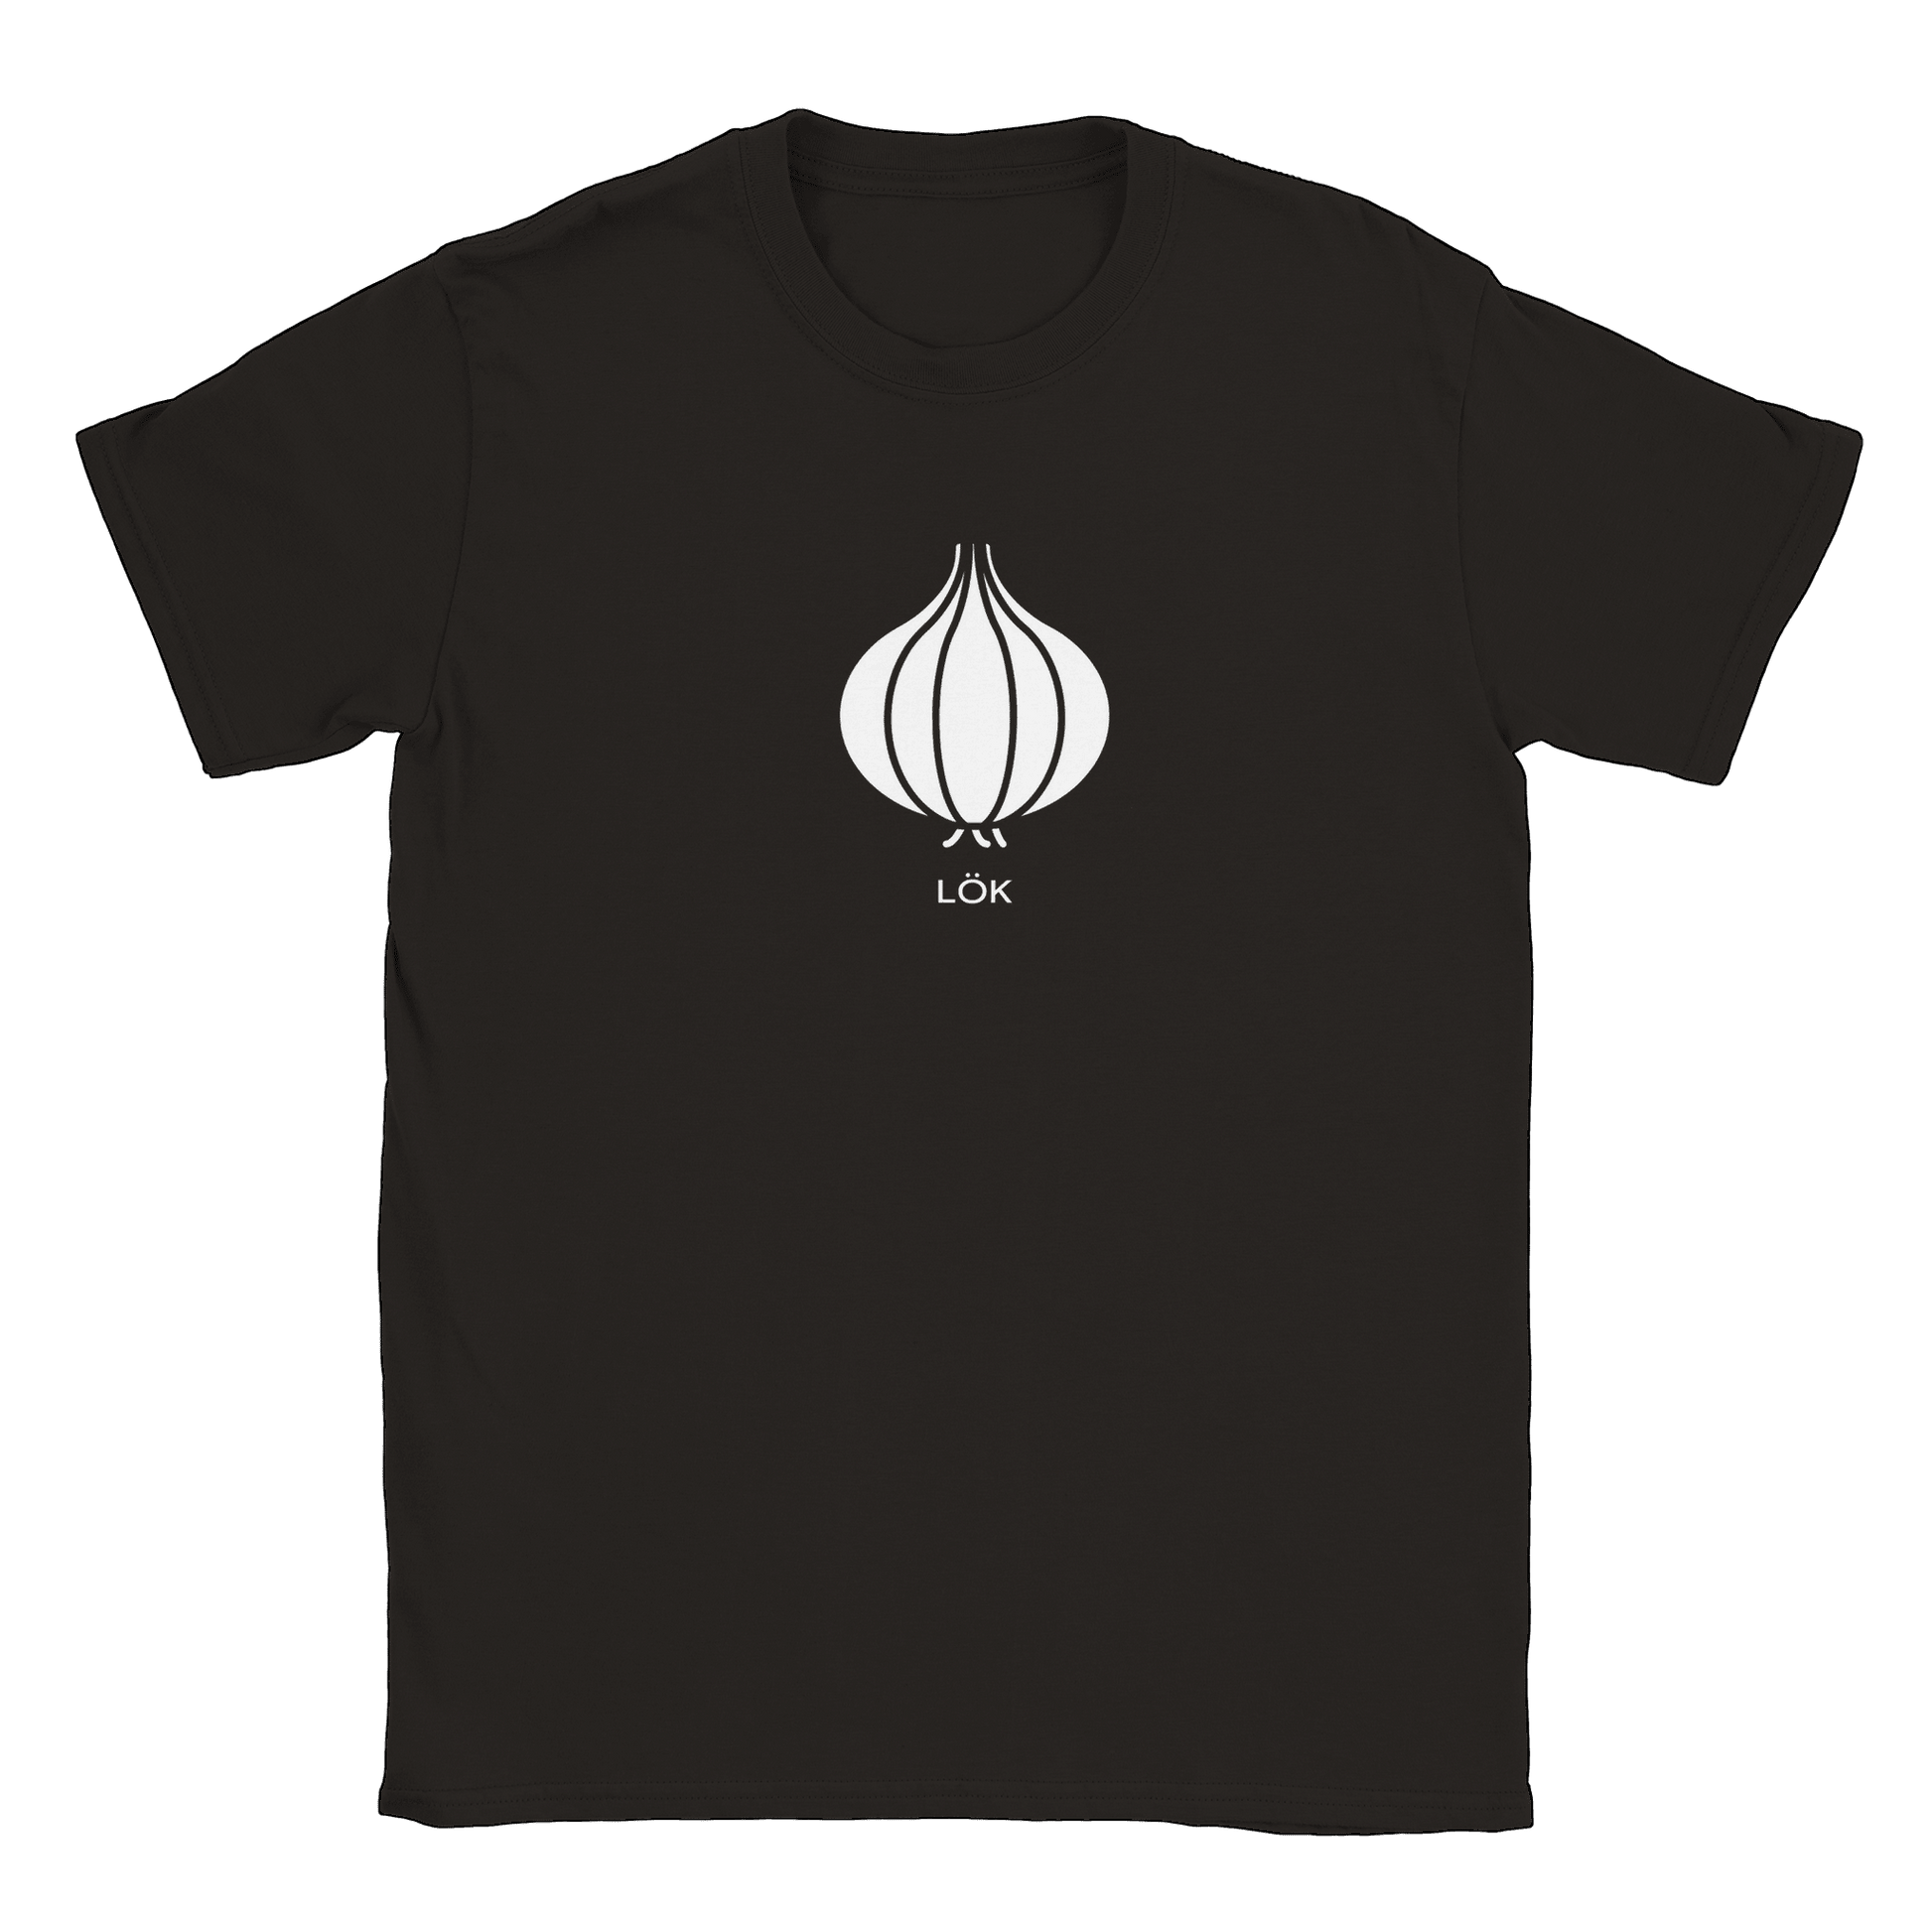 Lök - T-shirt Svart